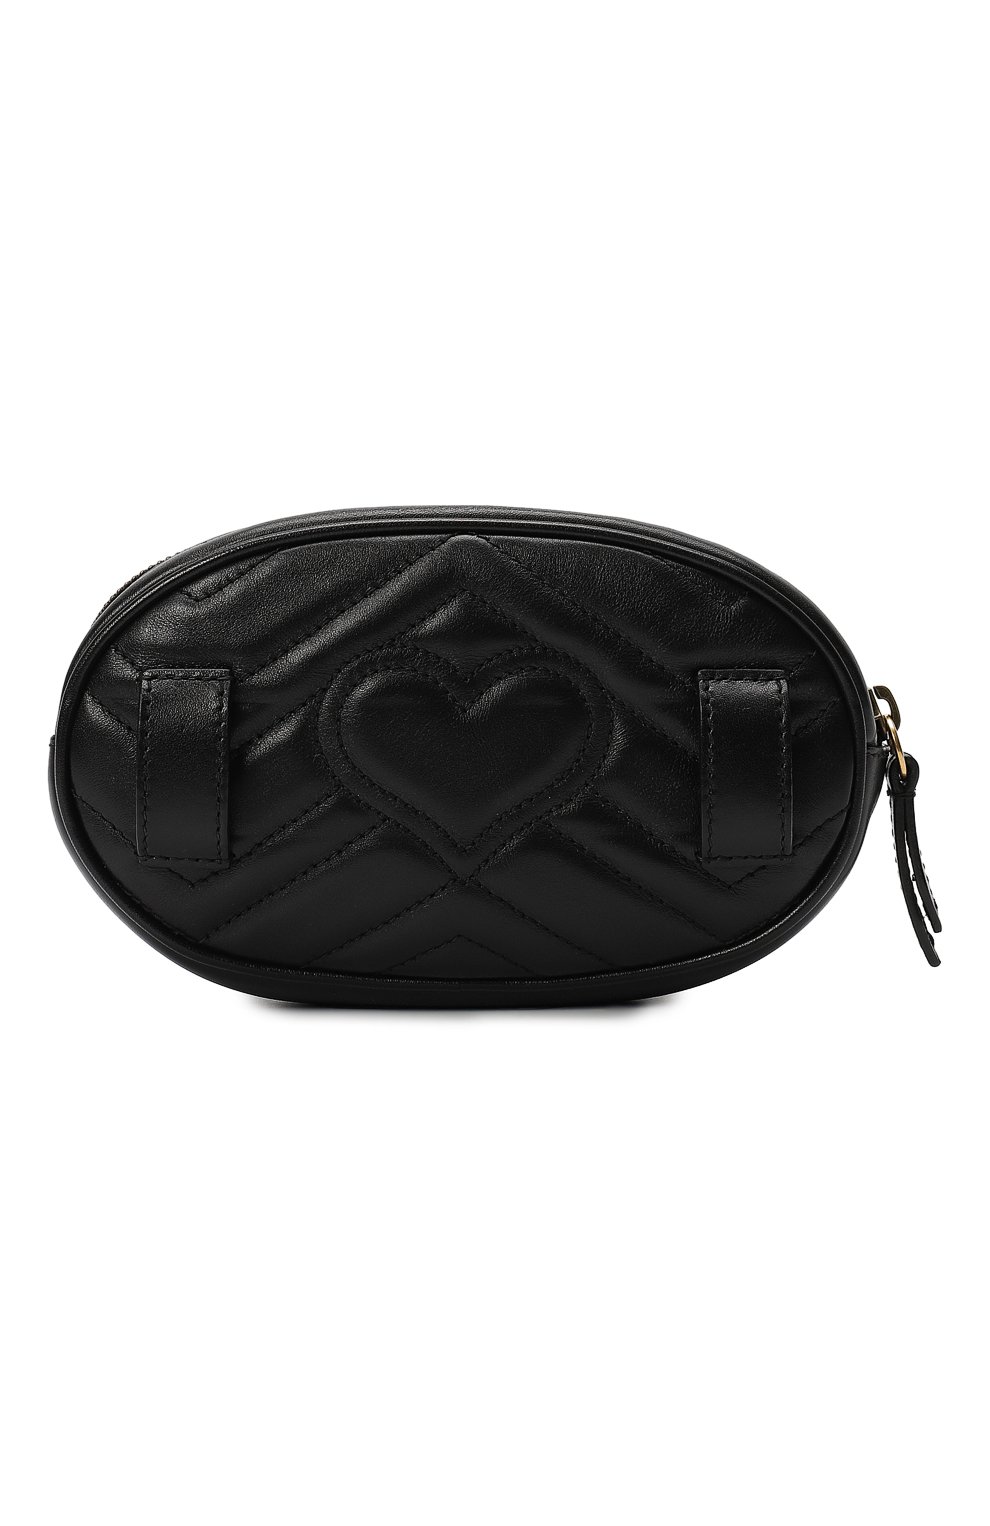 Поясная сумка GG Marmont | Gucci | Чёрный - 2